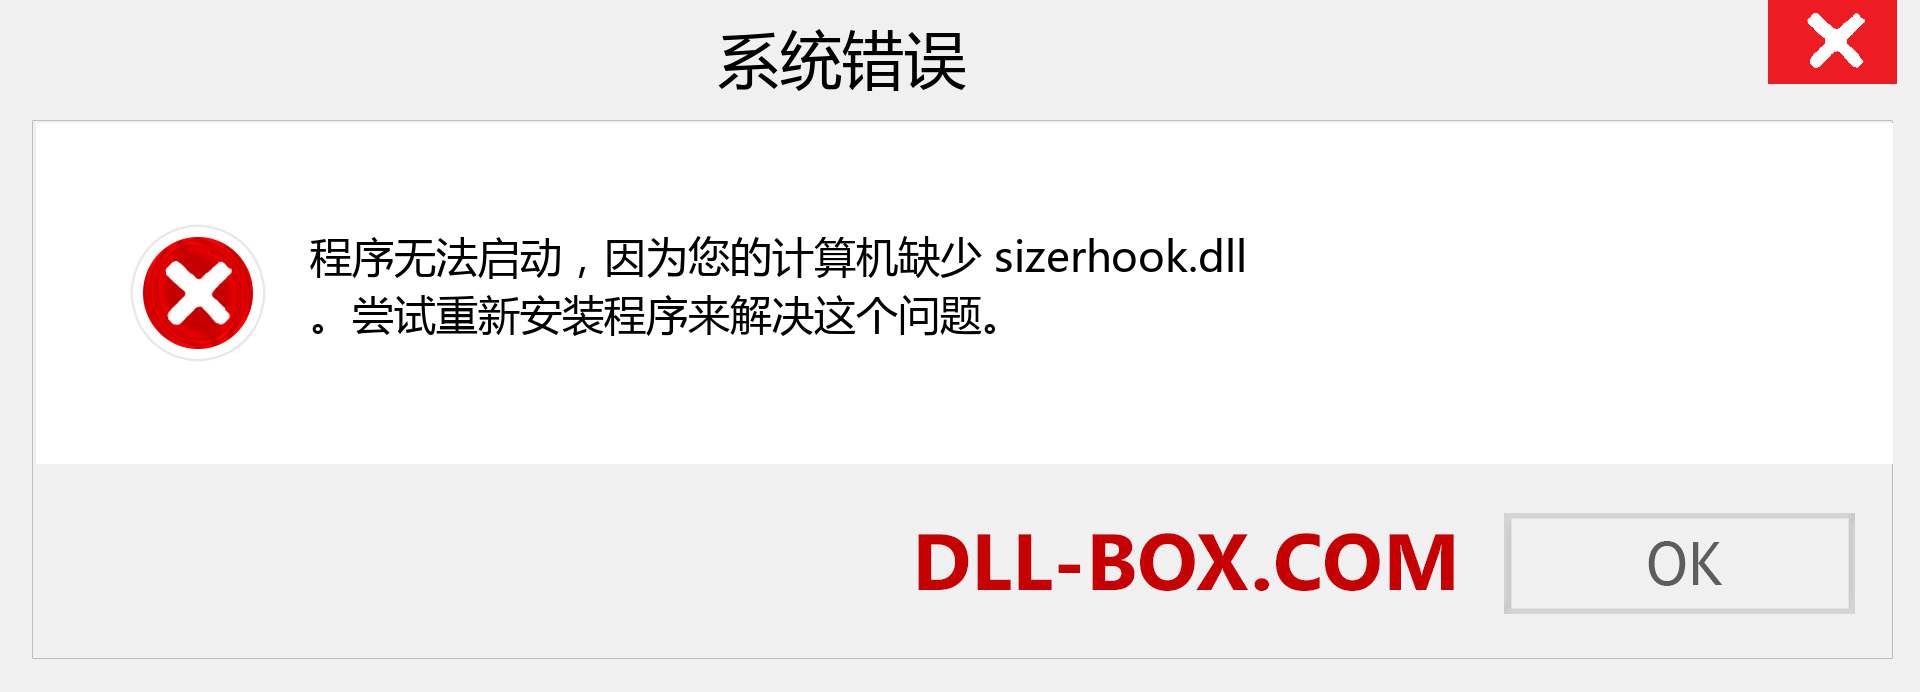 sizerhook.dll 文件丢失？。 适用于 Windows 7、8、10 的下载 - 修复 Windows、照片、图像上的 sizerhook dll 丢失错误